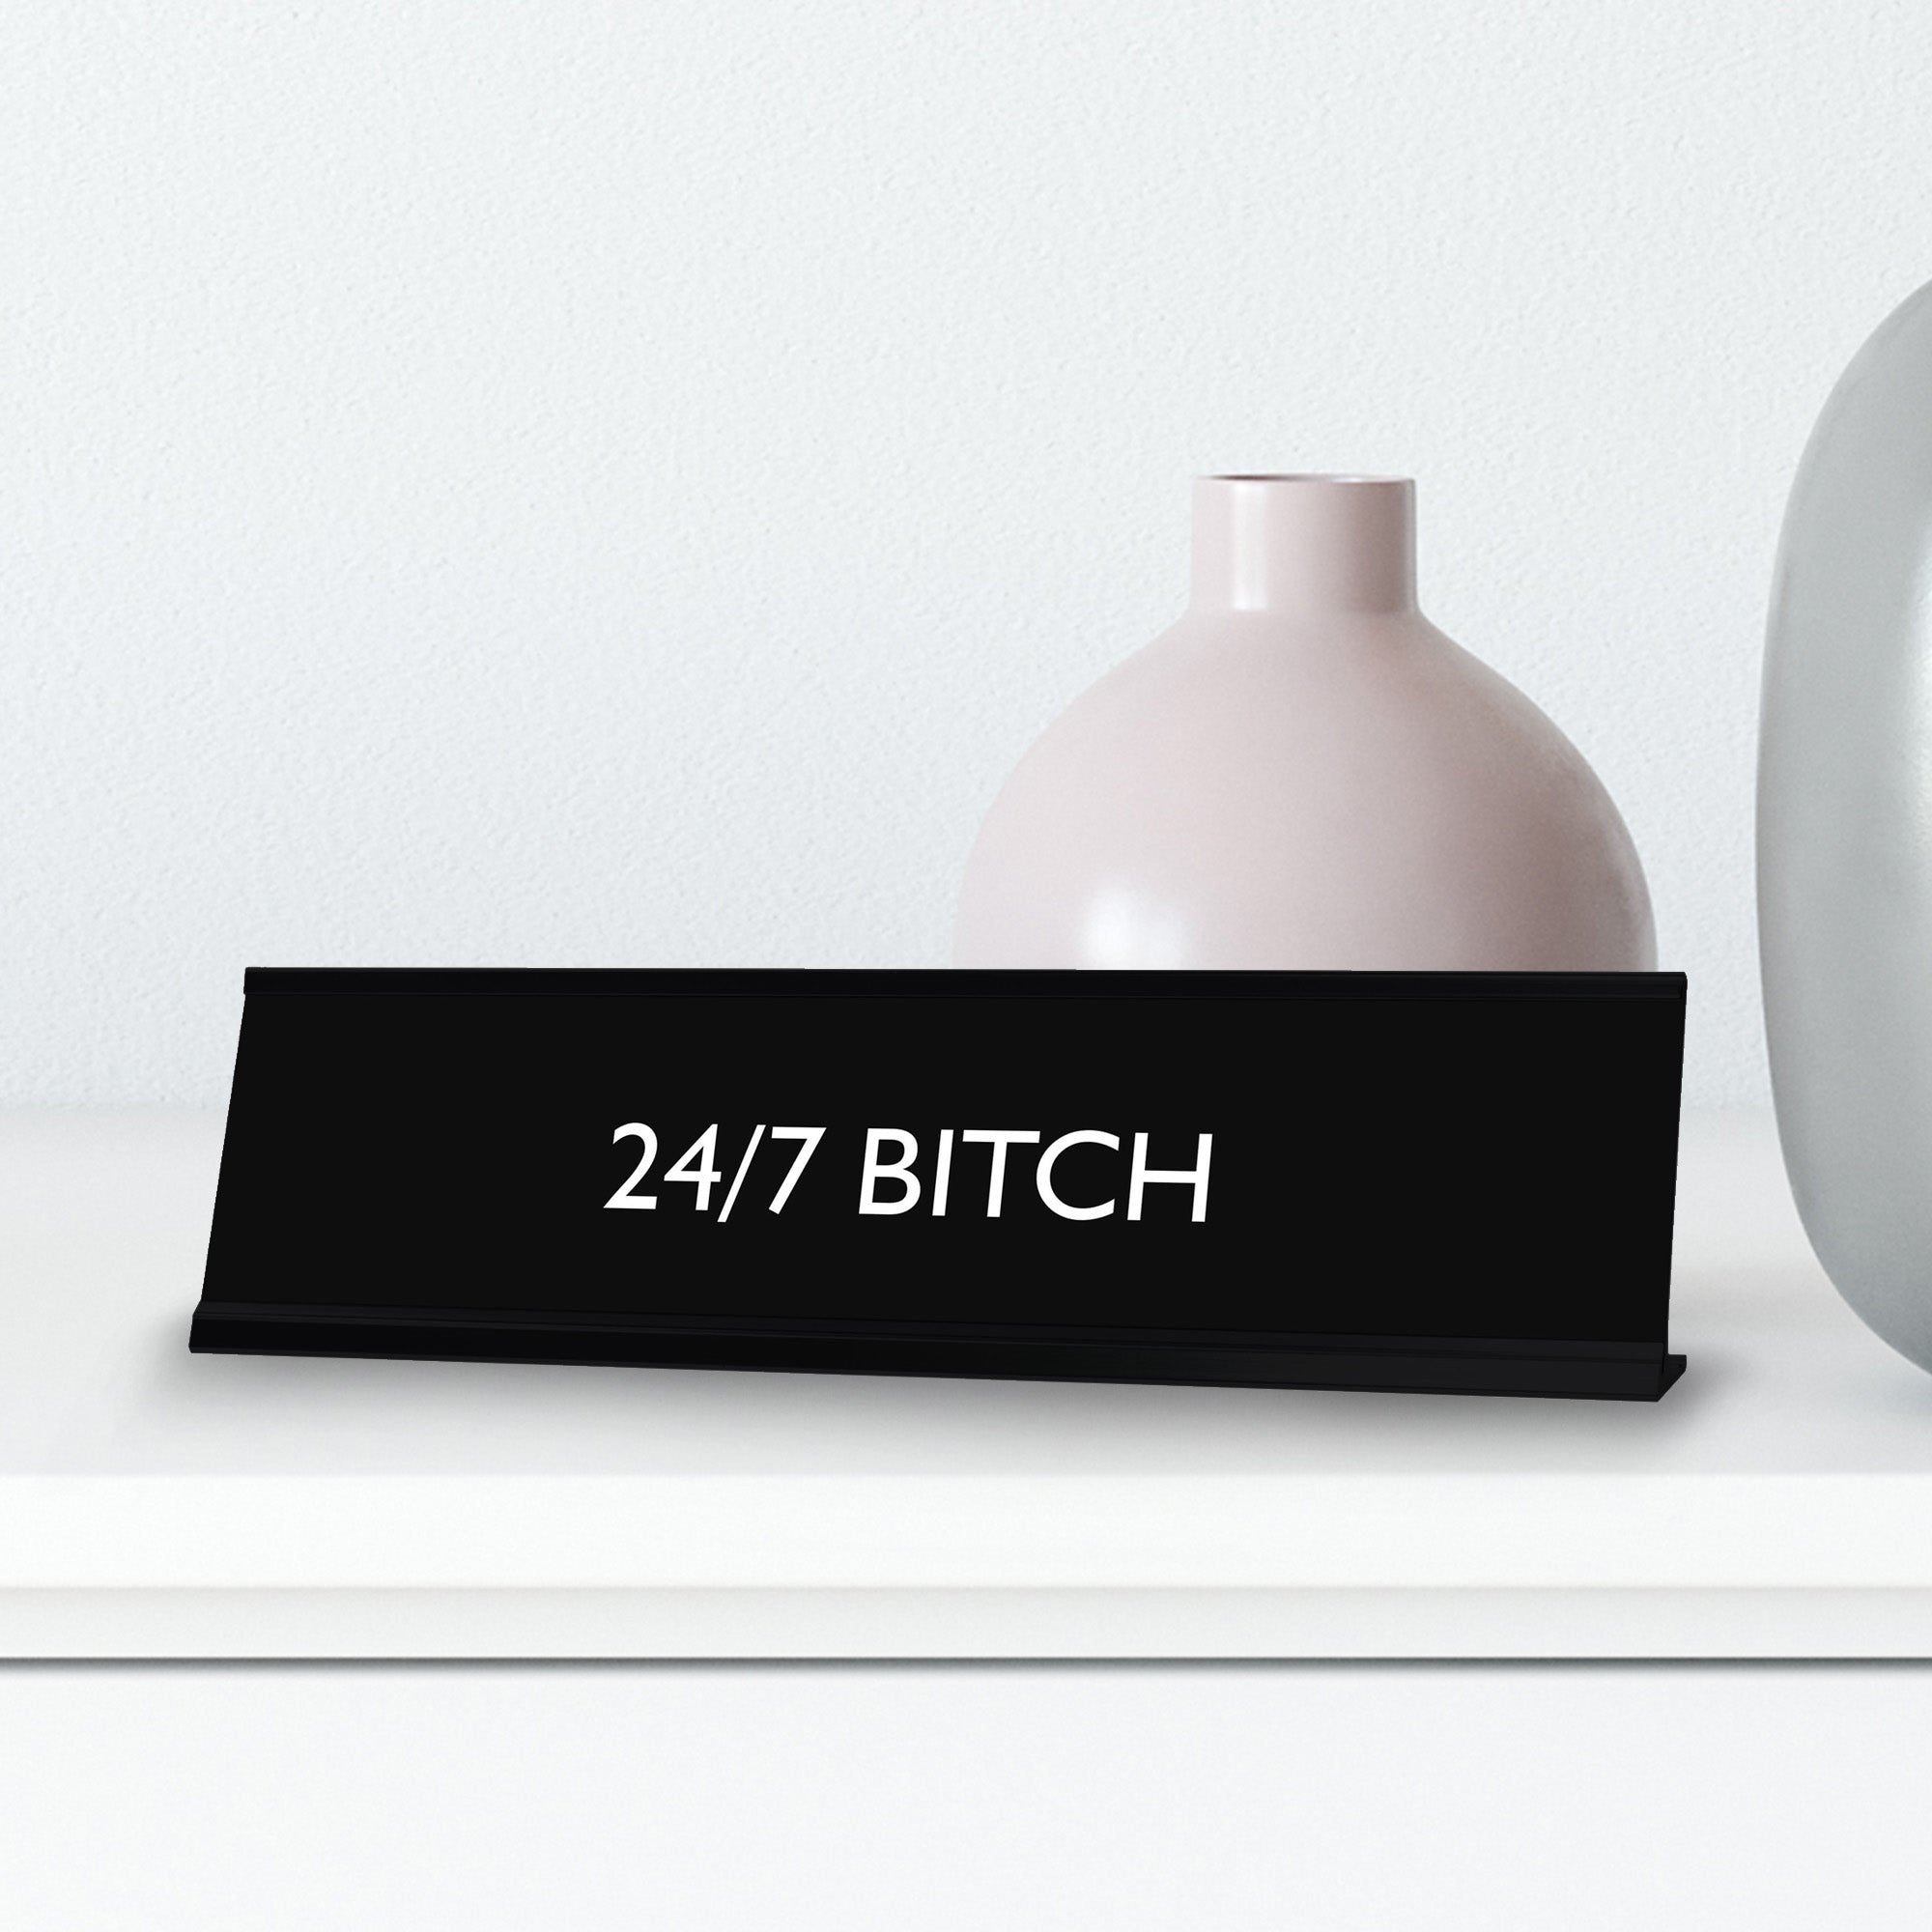 24/7 BITCH Novelty Desk Sign